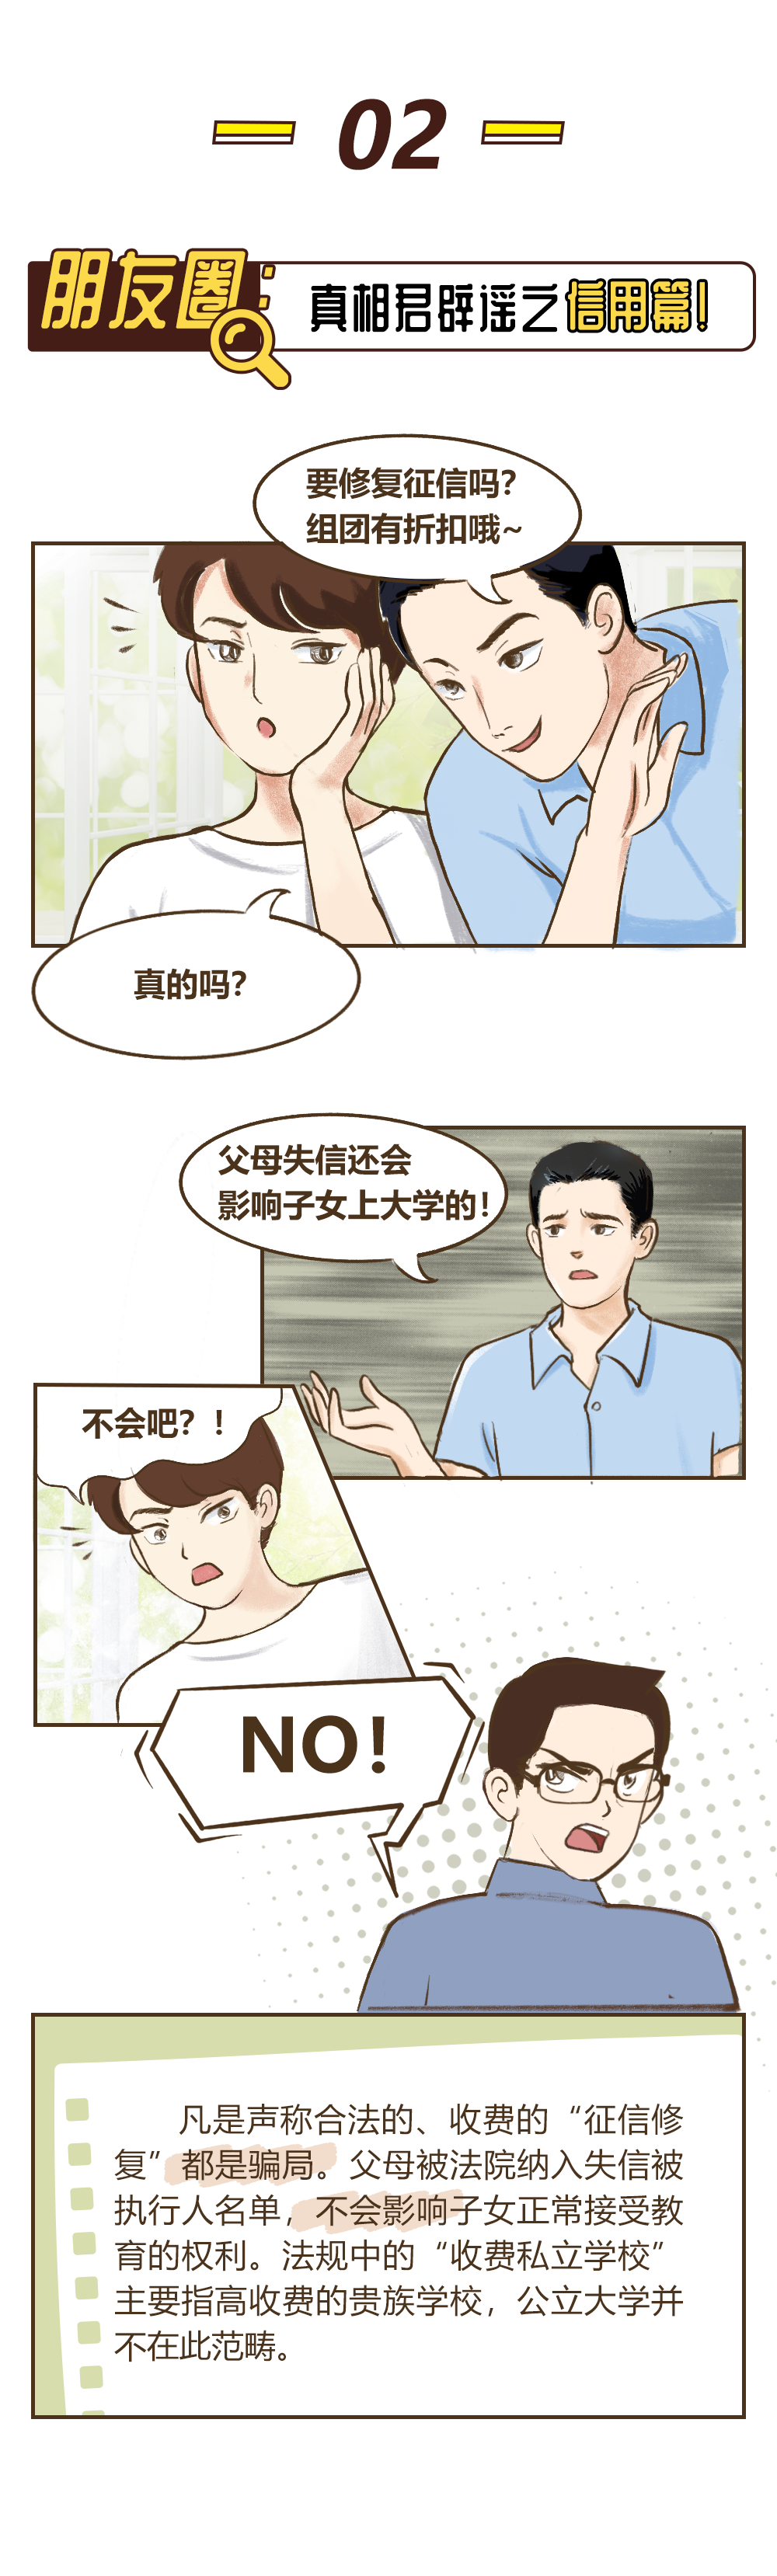 漫画——朋友圈内“谣”武扬威，真相君说：NO！